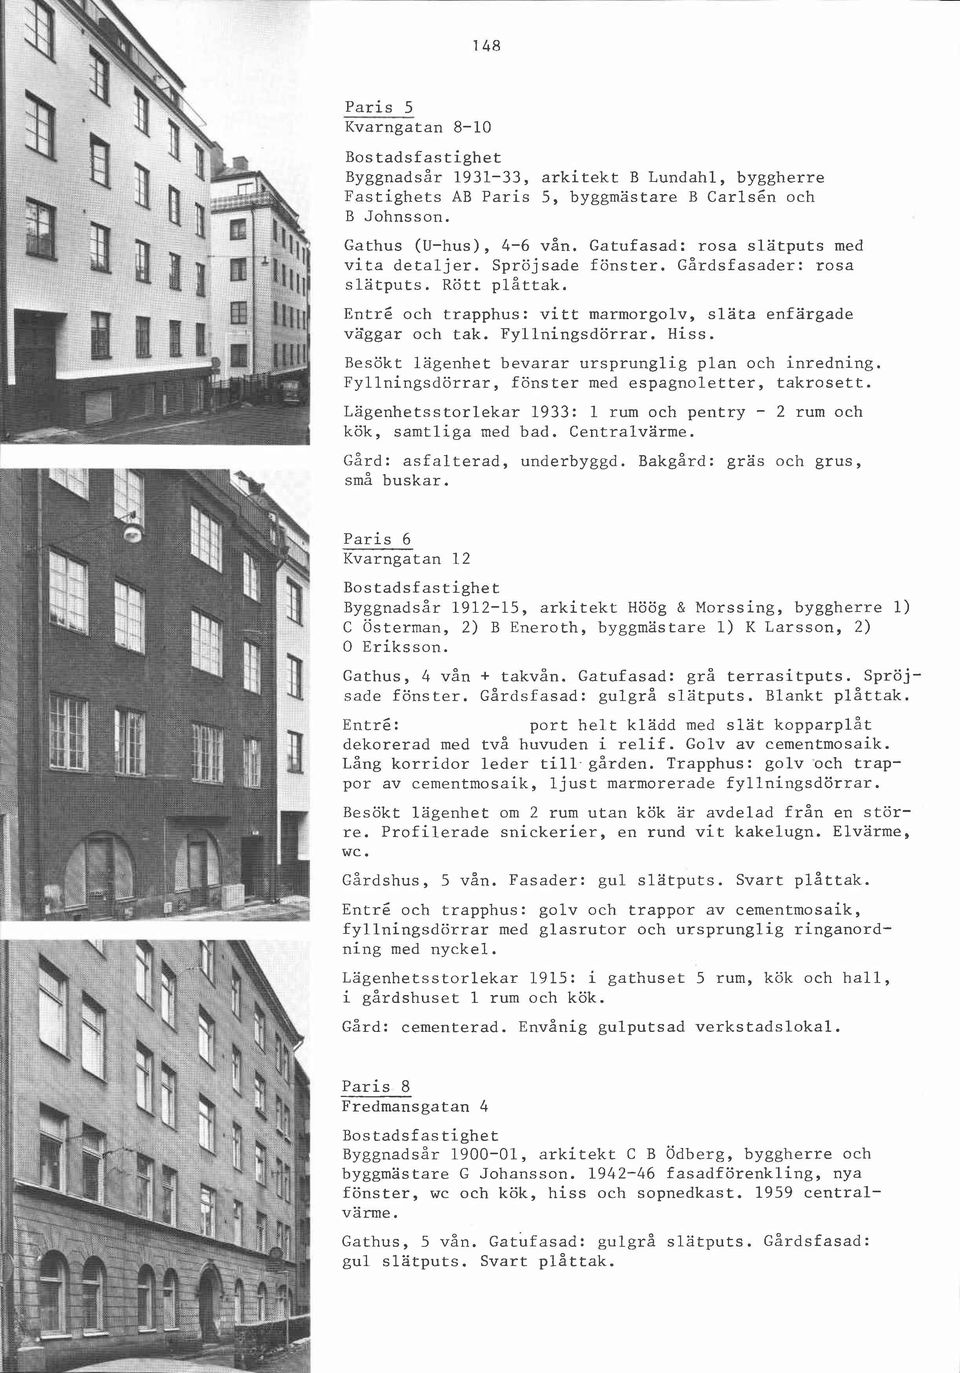 Besökt lägenhet bevarar ursprunglig plan och inredning. Fyllningsdörrar, fönster med espagnoletter, takrosett. Lägenhetsstorlekar 1933: 1 rum och pentry - 2 rum och kök, samtliga med bad.